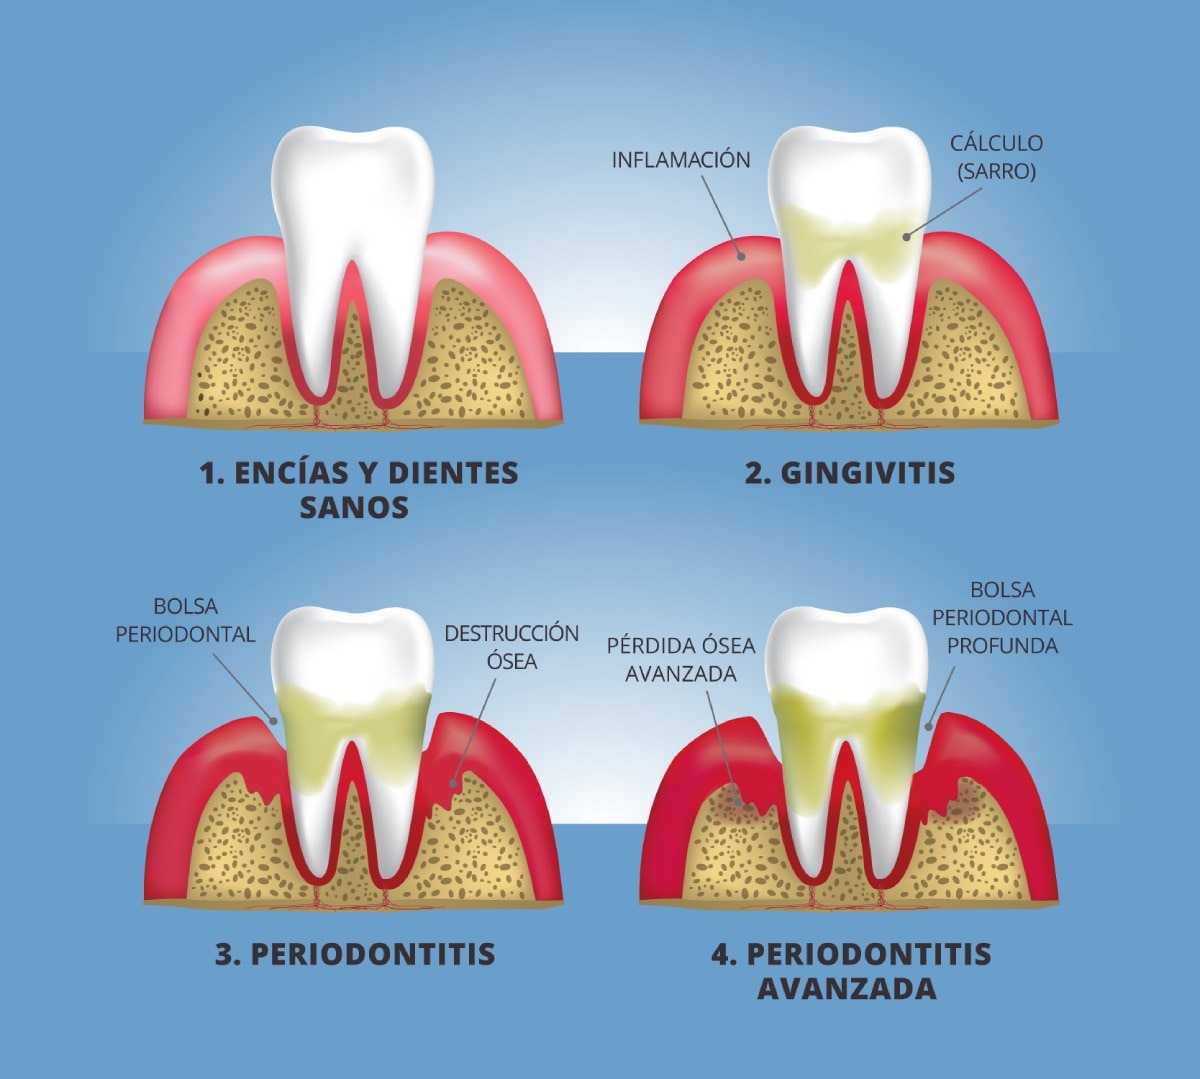 Ilustración en primer plano de un diente y encías, mostrando cuatro etapas de la enfermedad de las encías: (1) encías y diente sanos, (2) gingivitis, (3) periodontitis y (4) periodontitis avanzada.  Las etiquetas señalan:  inflamación, cálculo (sarro), bolsa periodontal, destrucción ósea, pérdida ósea avanzada y bolsa periodontal profunda.